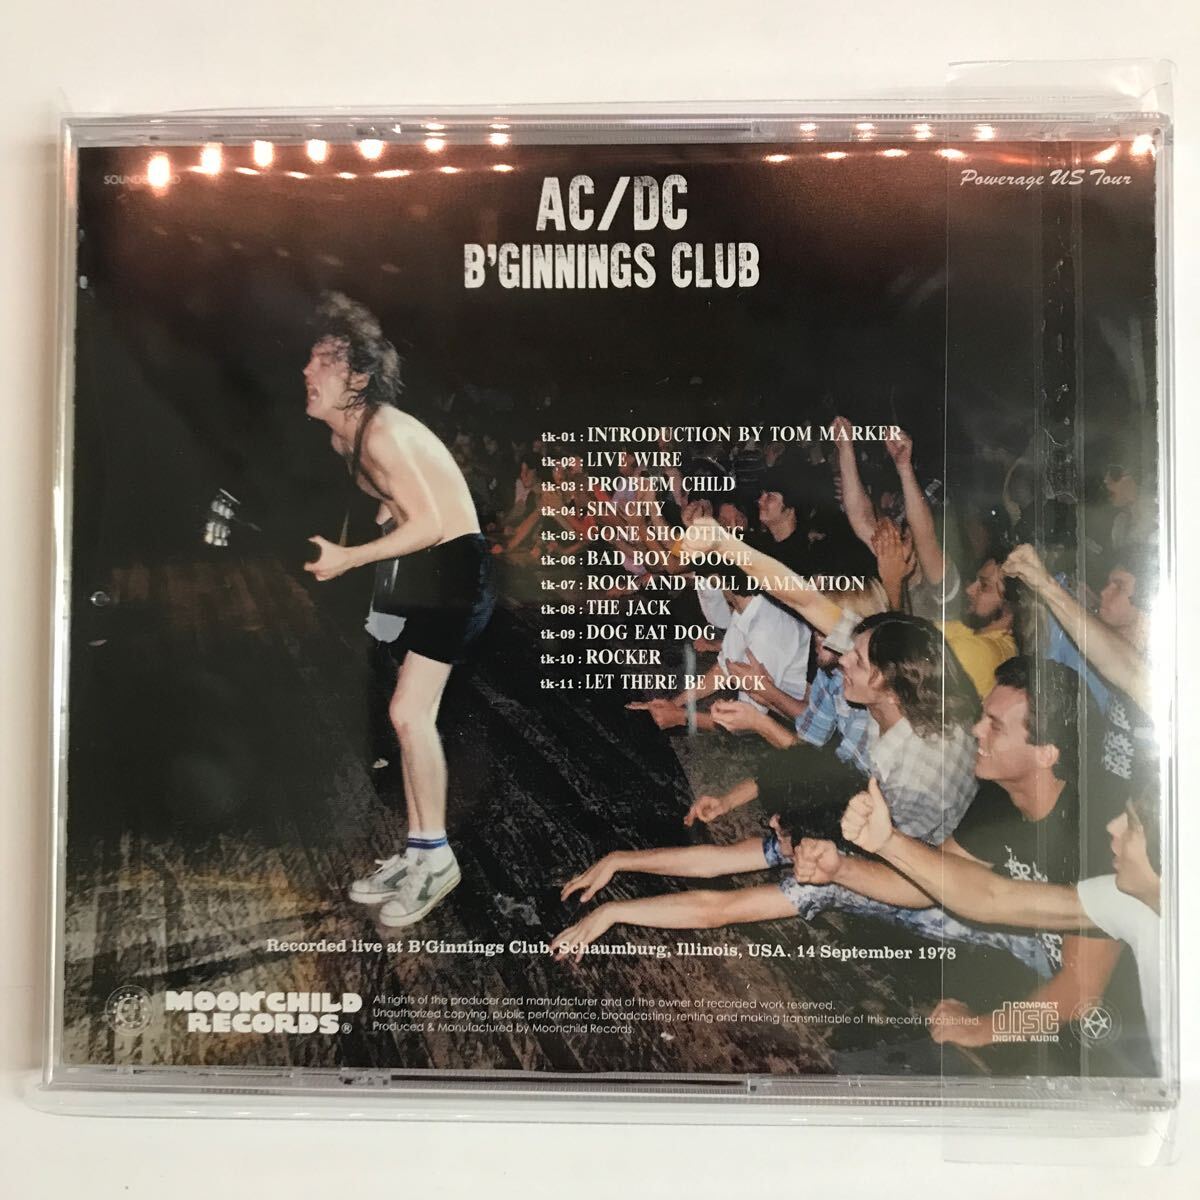 AC/DC : B’GINNINGS CLUB (CD) moochild records ... поступление товара   ... ... ... ...！1978 год ... любовь ...！ звук   доска  ！...CD